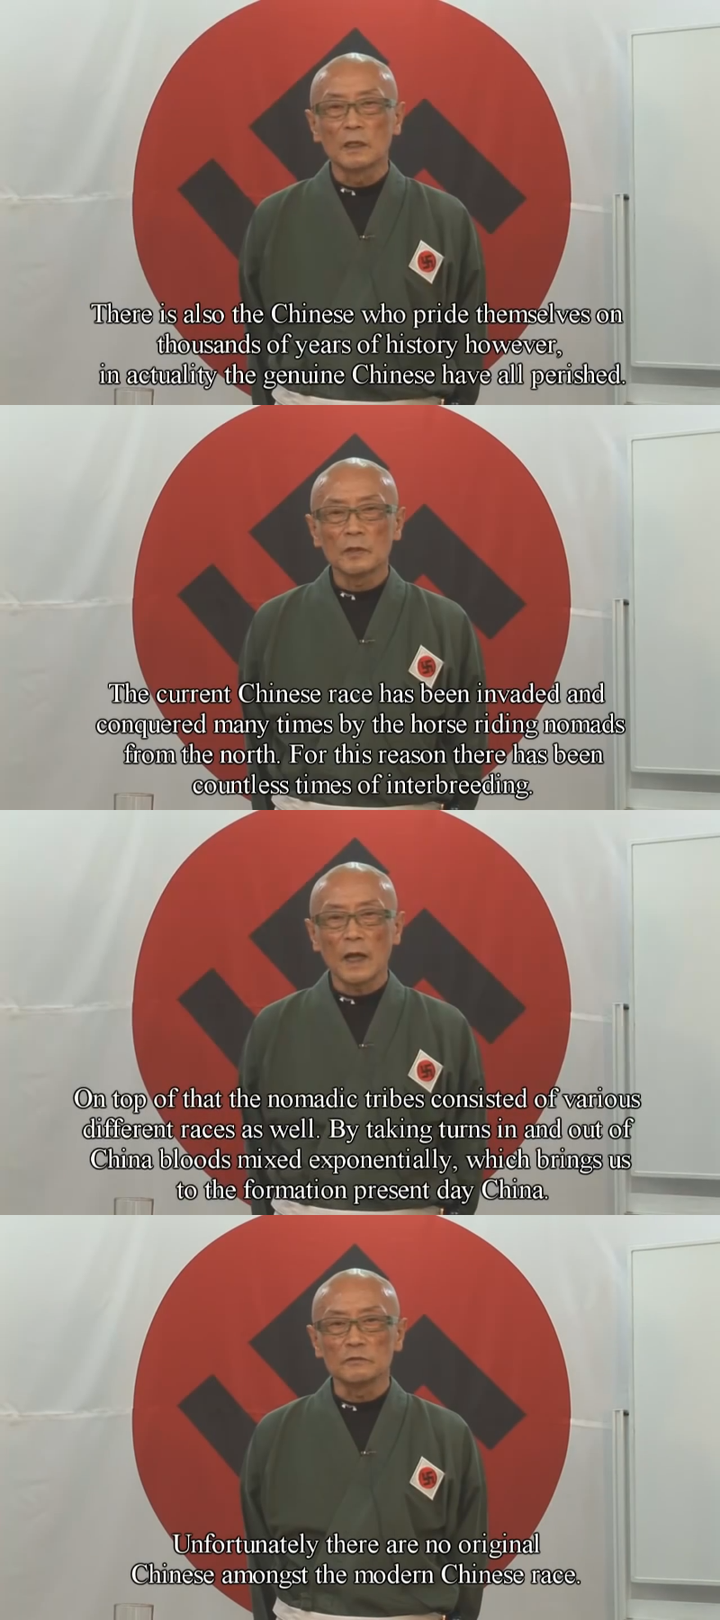 日本法西斯主义图片